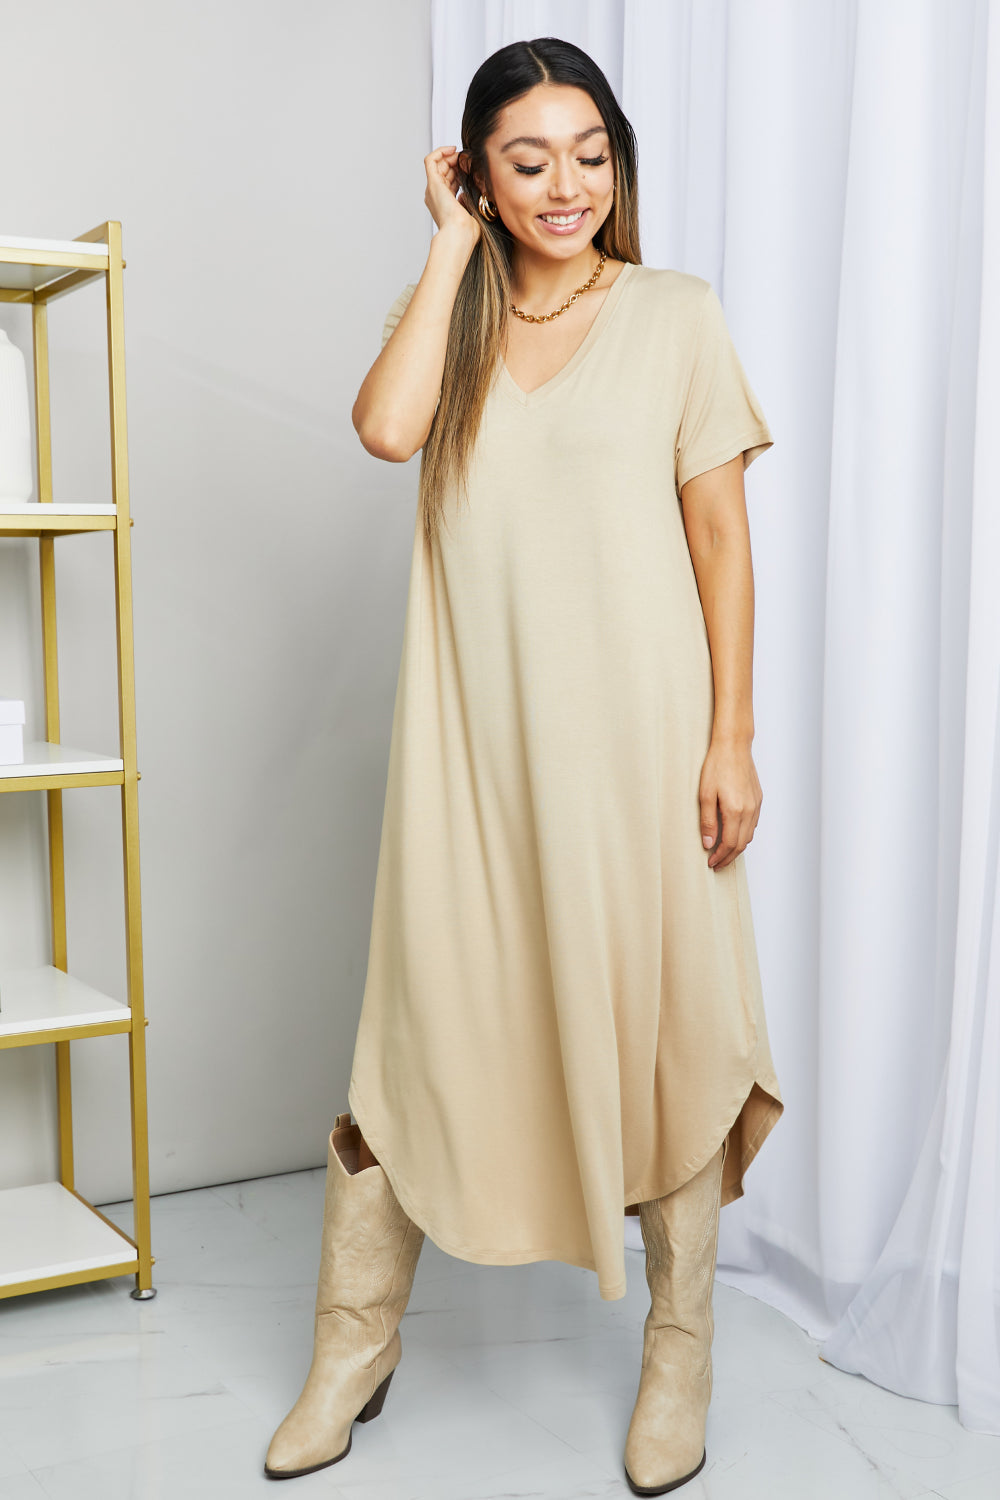 V-Neck Short Sleeve Curved Hem Dress in Caffe Latte - Beige / S - All Dresses - Dresses - 1 - 2024